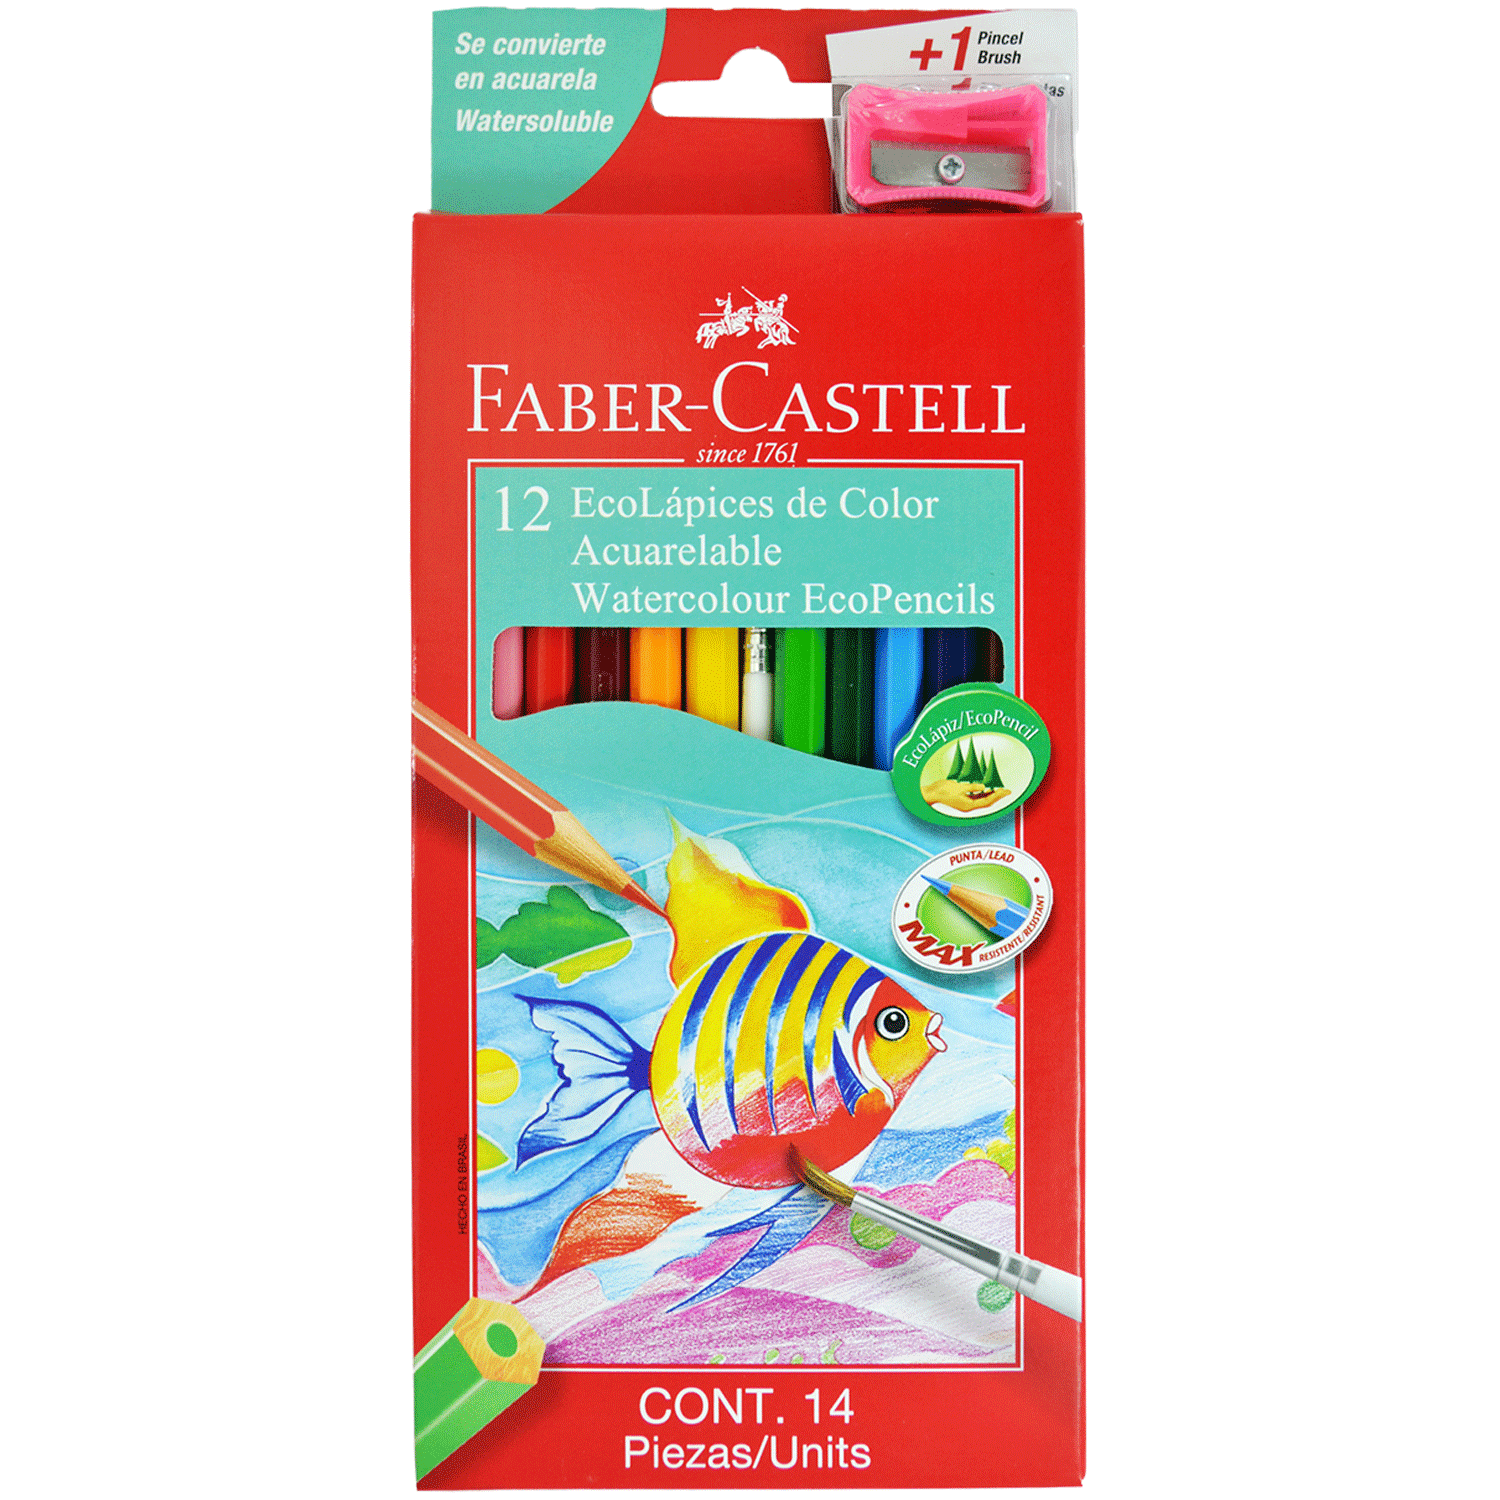 Lápices de Colores Faber-Castell Acuarelables 12 Colores